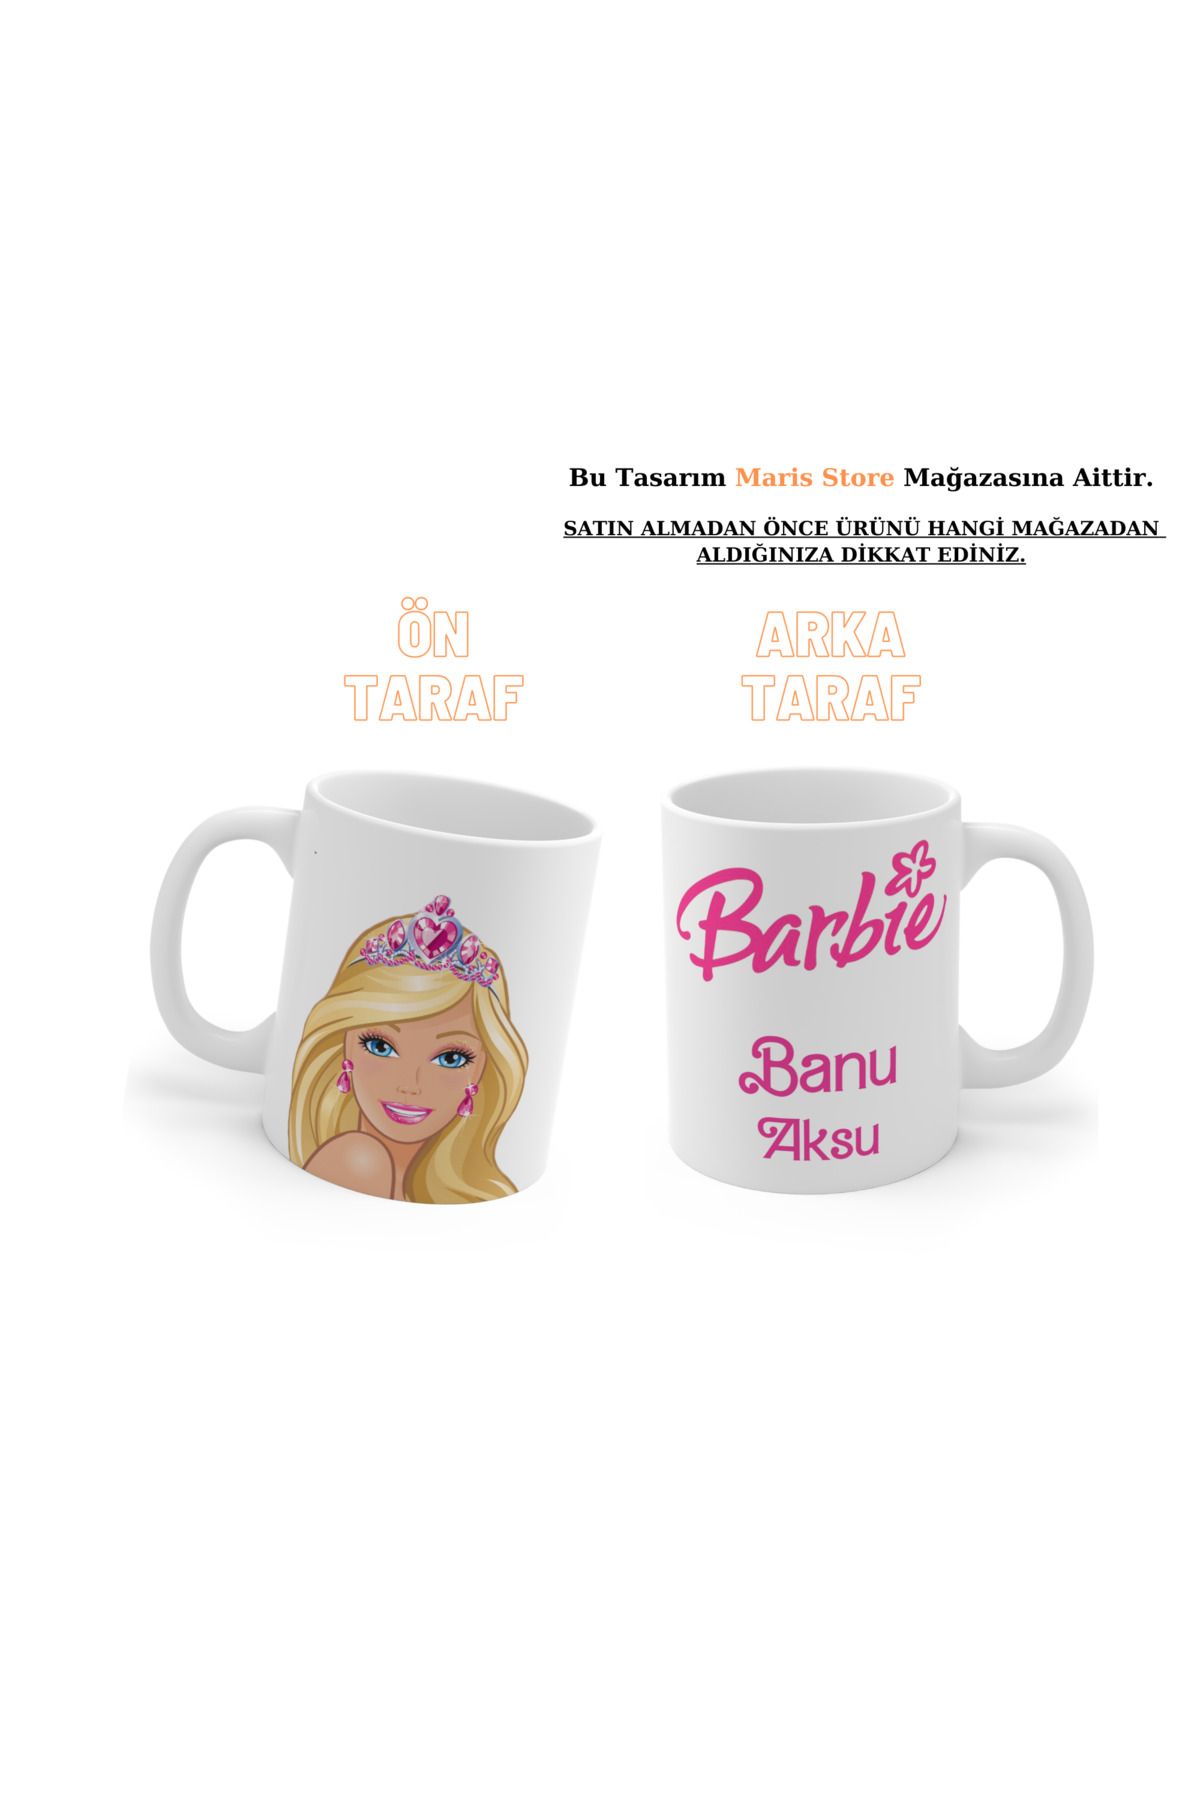 MARİS STORE Barbie Kişiye Özel Ad-soyad Tasarım Dijital Baskılı Hd Kalite Yıkanabilir Kupa Bardak